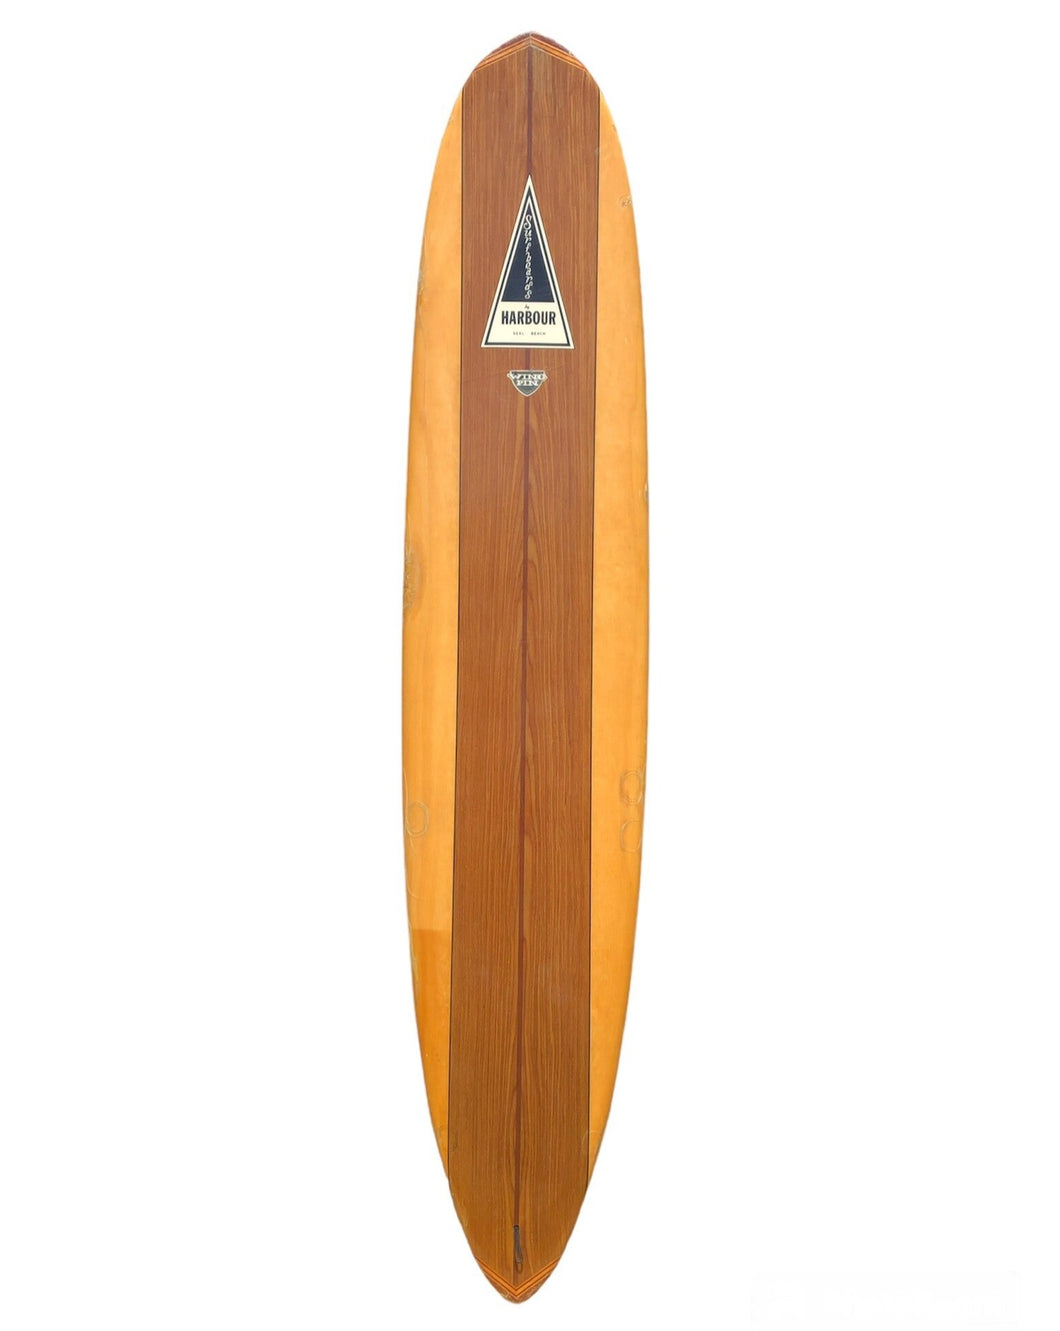 Harbour surfboard vintage